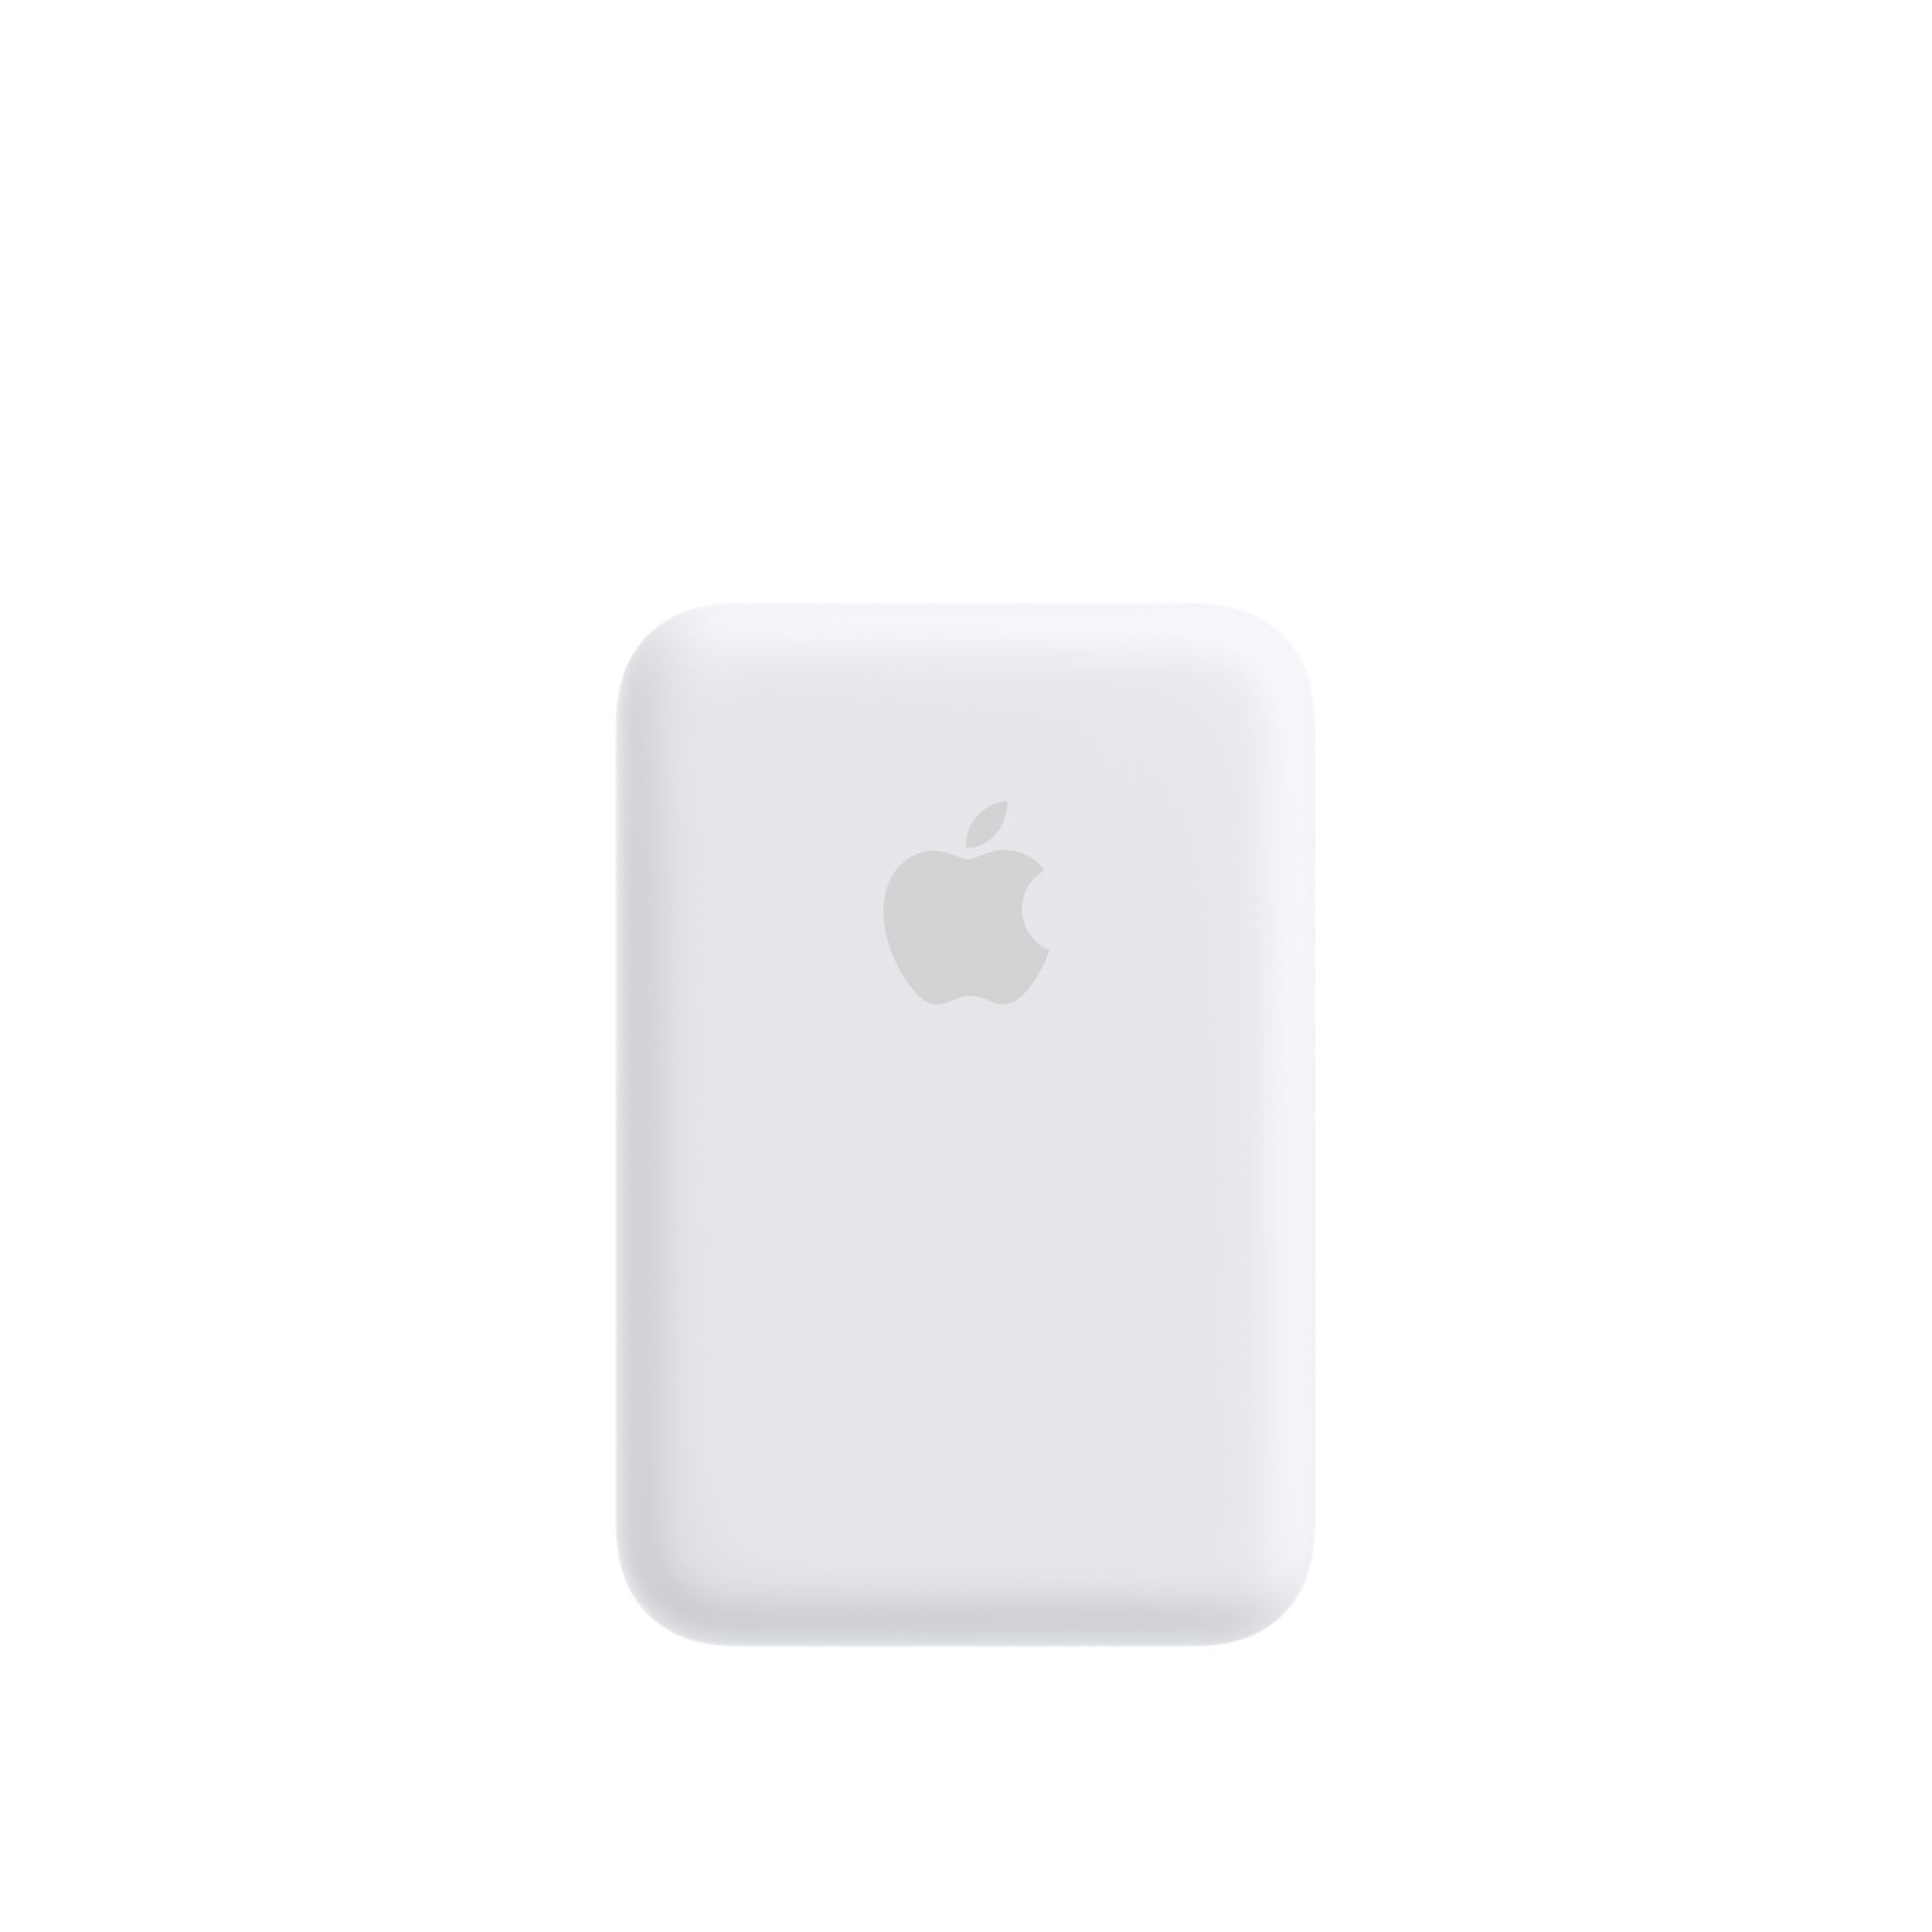 Apple Externe MagSafe Batterie